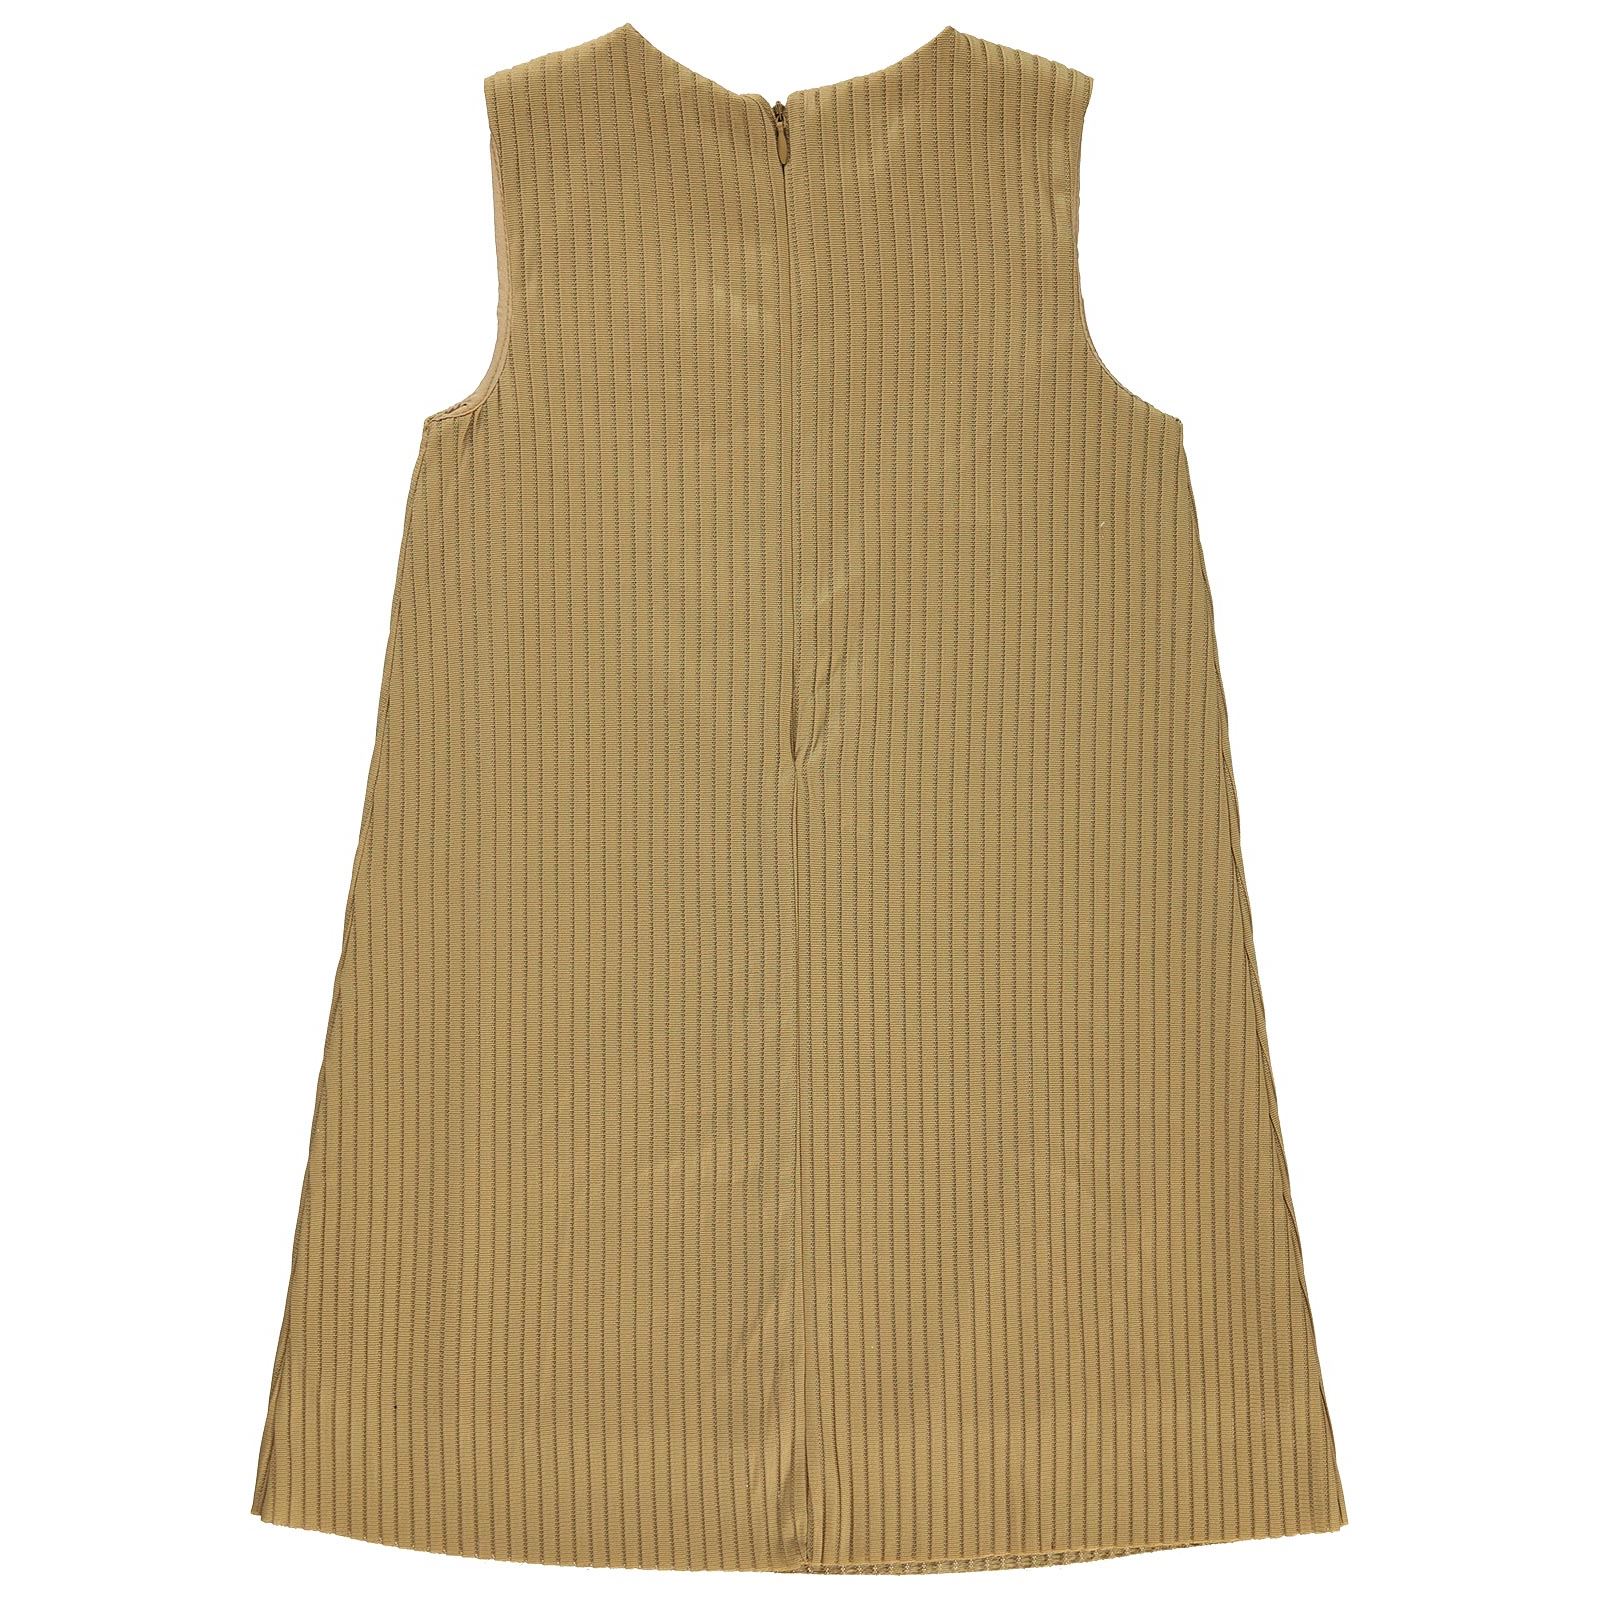 Wecan Kız Çocuk Çantalı Elbise 6-9 Yaş Kahverengi